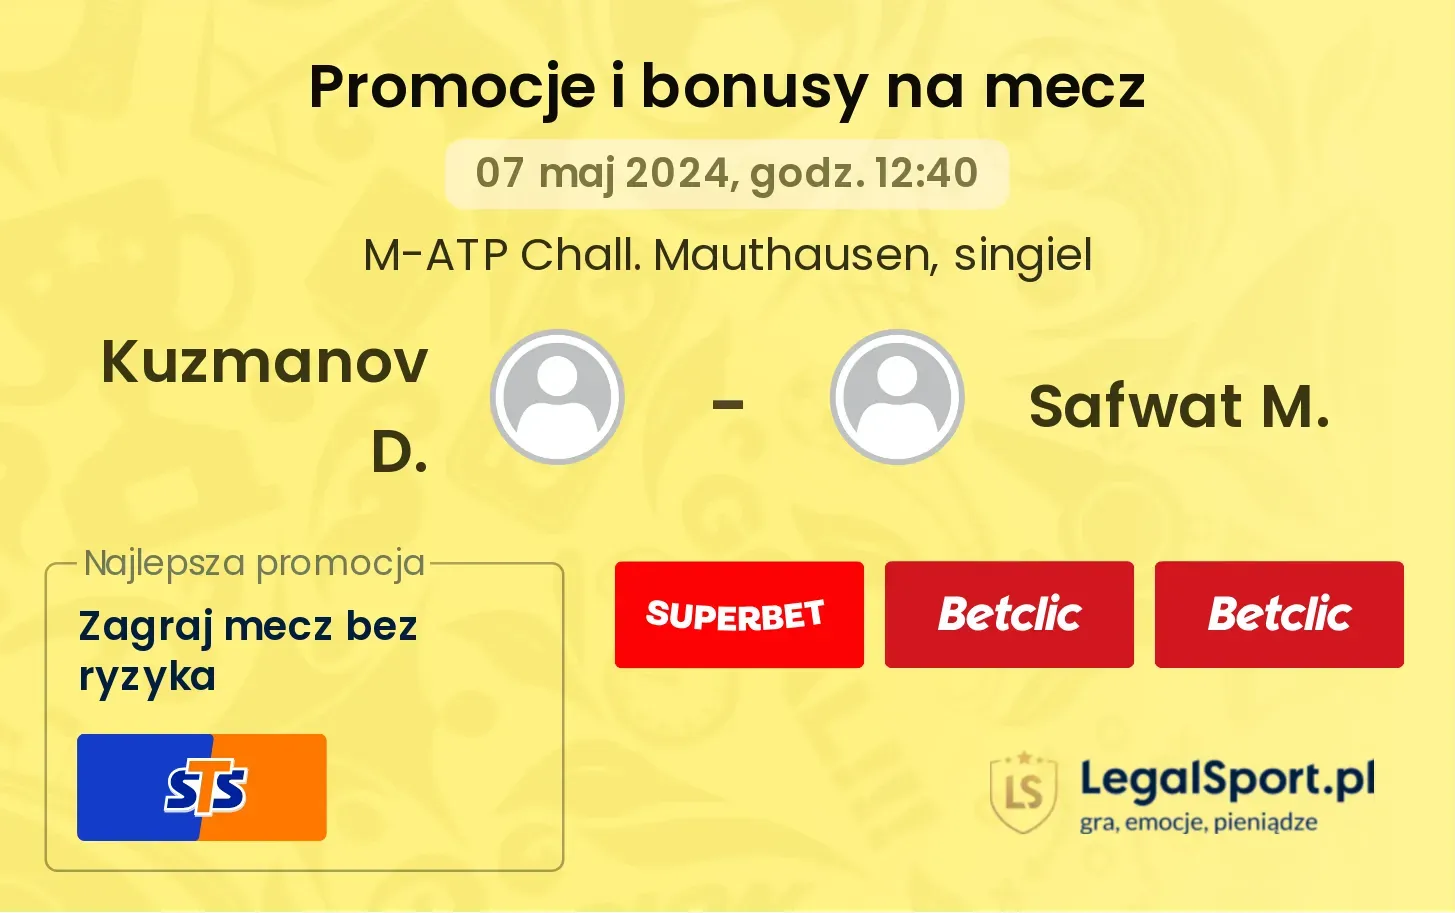 Kuzmanov D. - Safwat M. promocje bonusy na mecz